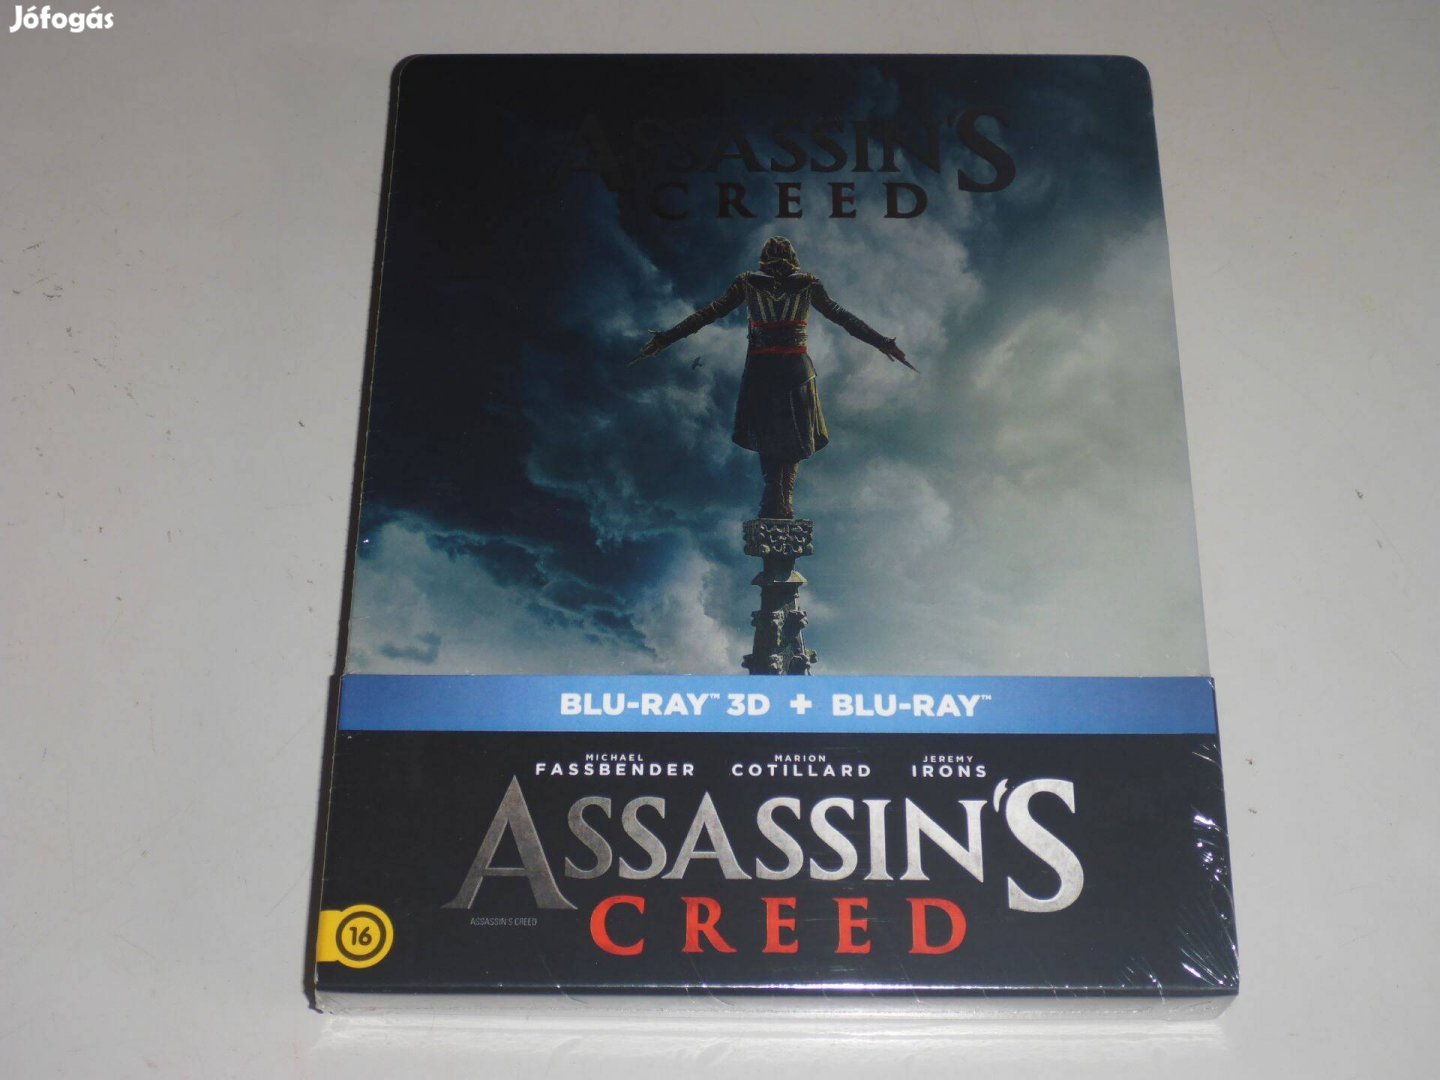 Assassins Creed 3D+2D - limitált, fémdobozos vált.(steelbook) blu-ray